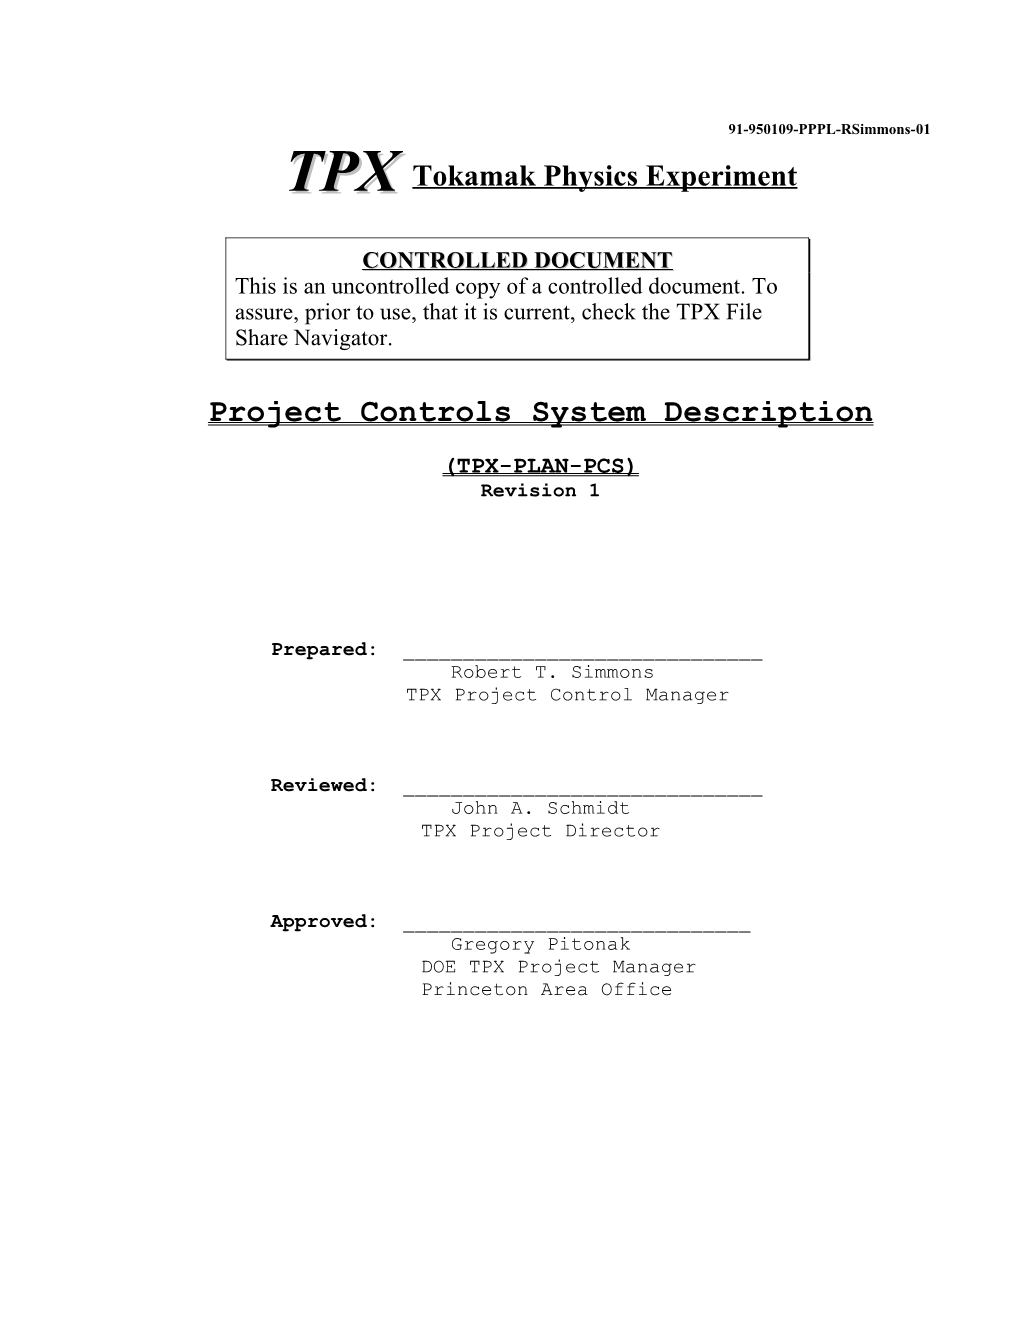 TPX Tokamak Physics Experiment